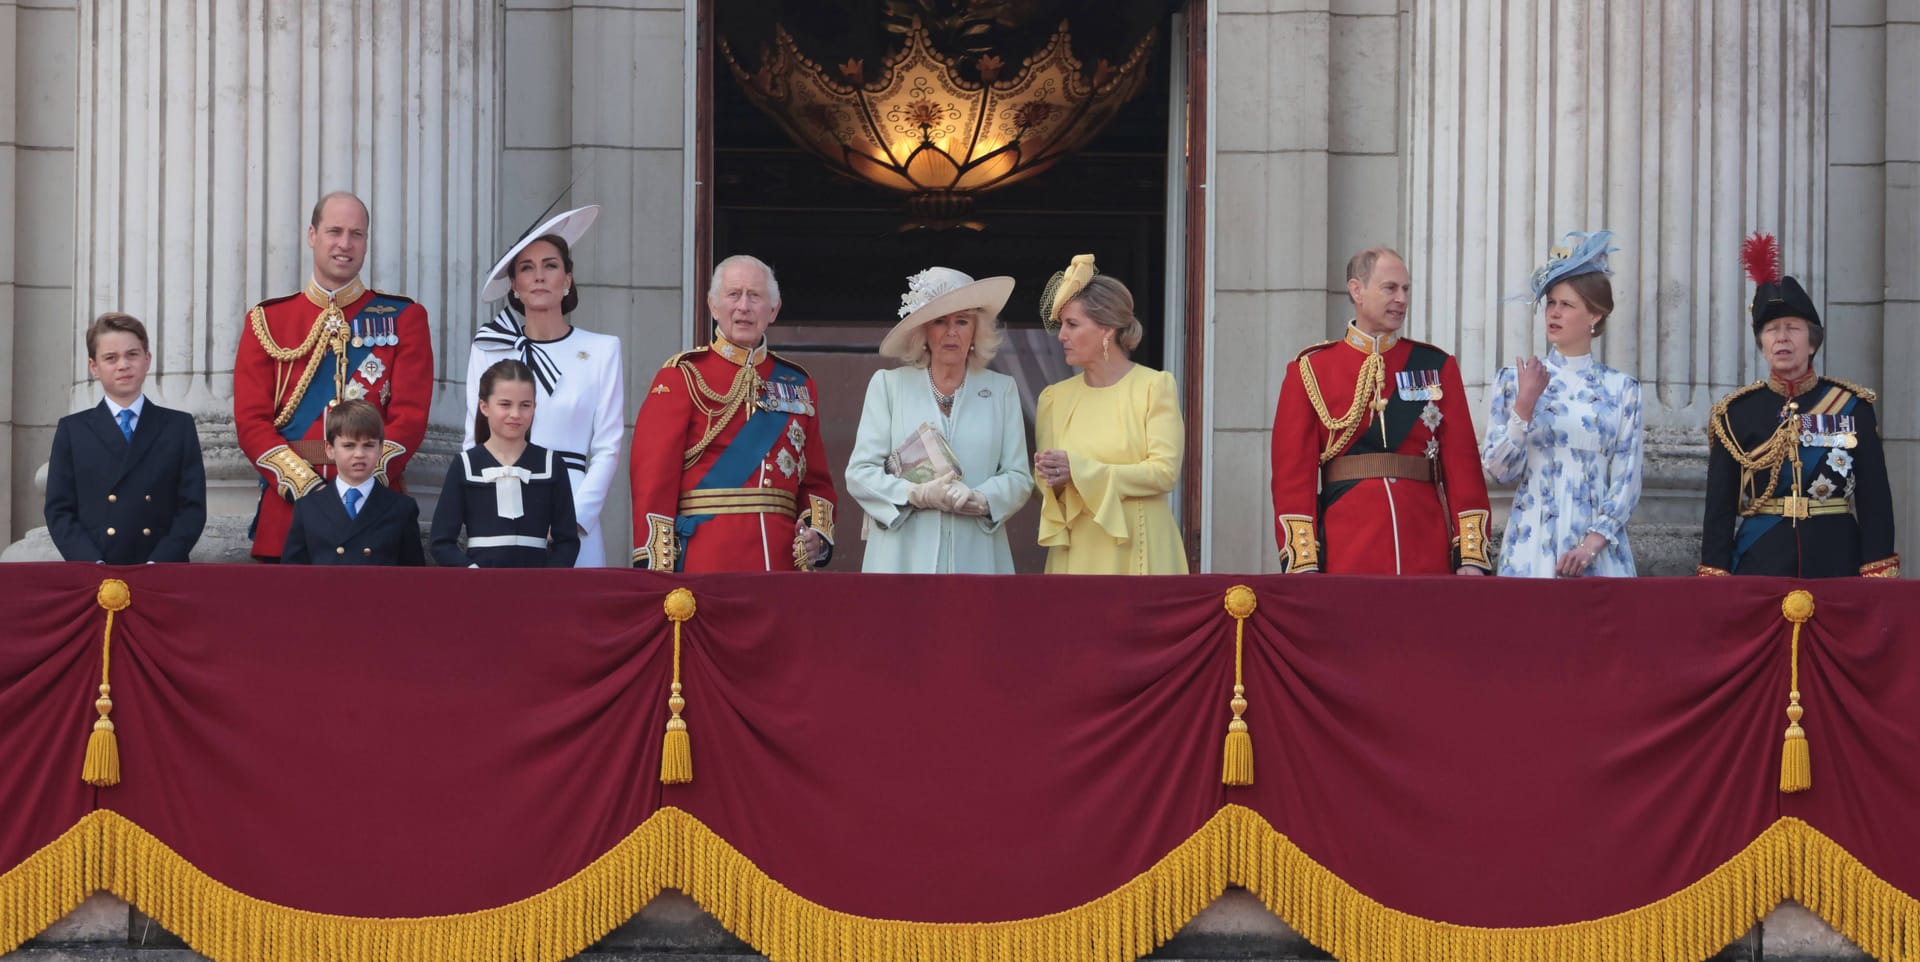 Von links nach rechts: George, William, Louis, Charlotte, Kate, Charles, Camilla, Sophie, Edward, Louise und Anne bei "Trooping the Colour" auf dem Palastbalkon.